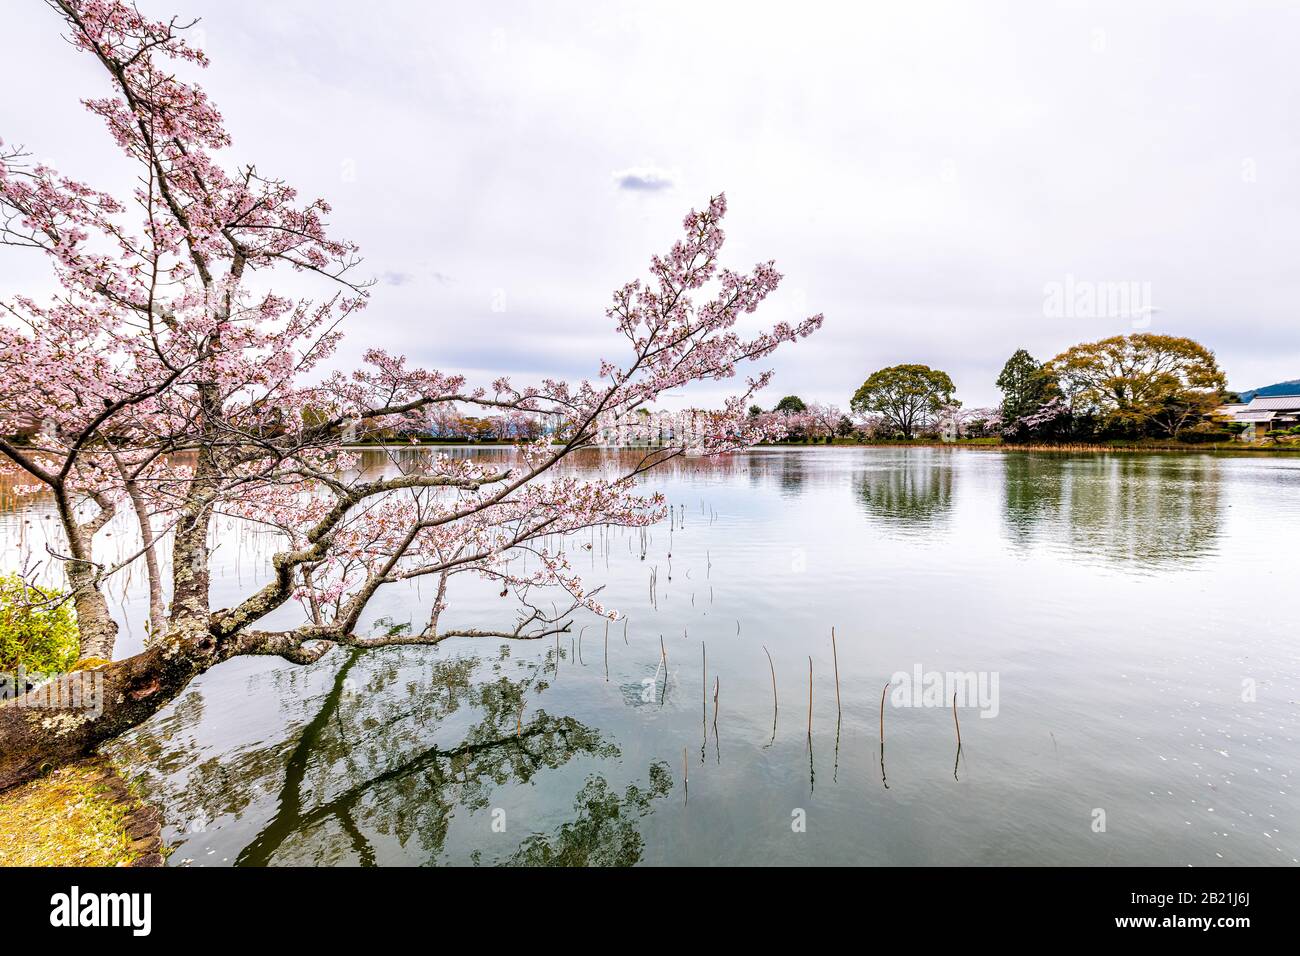 Kyoto, arbre de cerisiers en fleurs du Japon, près du lac Osawa-no-Ike au printemps dans la région d'Arashiyama, près du temple Daikakuji avec un bateau traditionnel rouge Banque D'Images